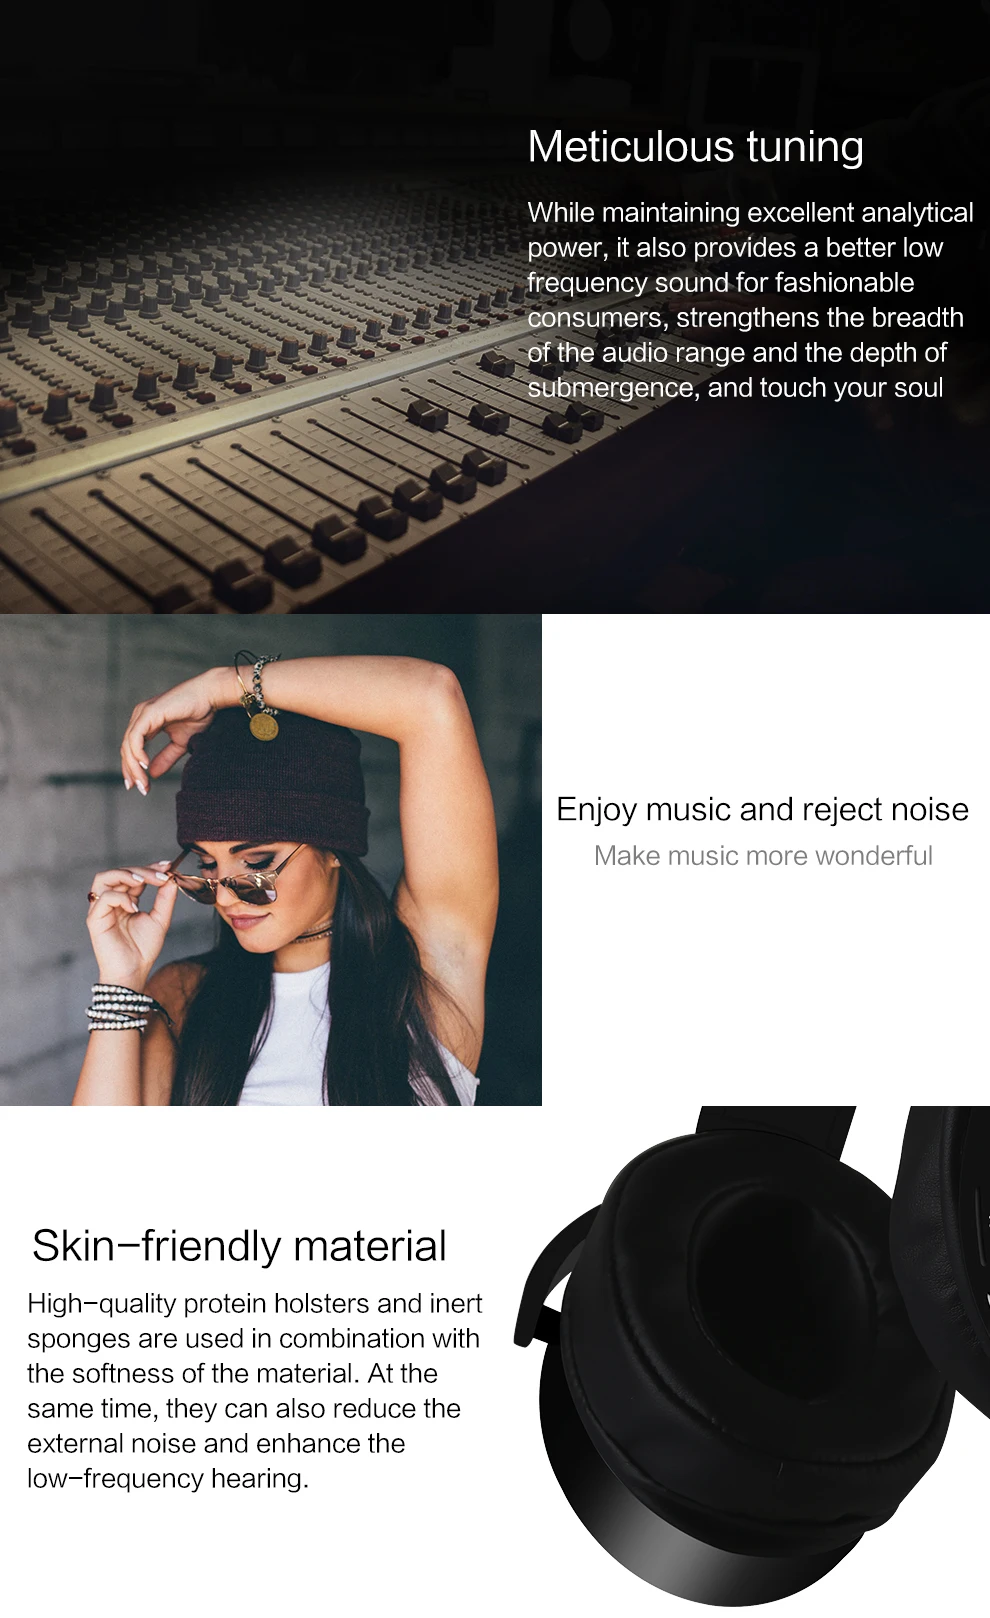 Шум Отмена гарнитура Bluetooth Super Bass Звучания Наушники Беспроводной музыка Hi-Fi Stoere наушники с микрофоном Поддержка FM TF карты